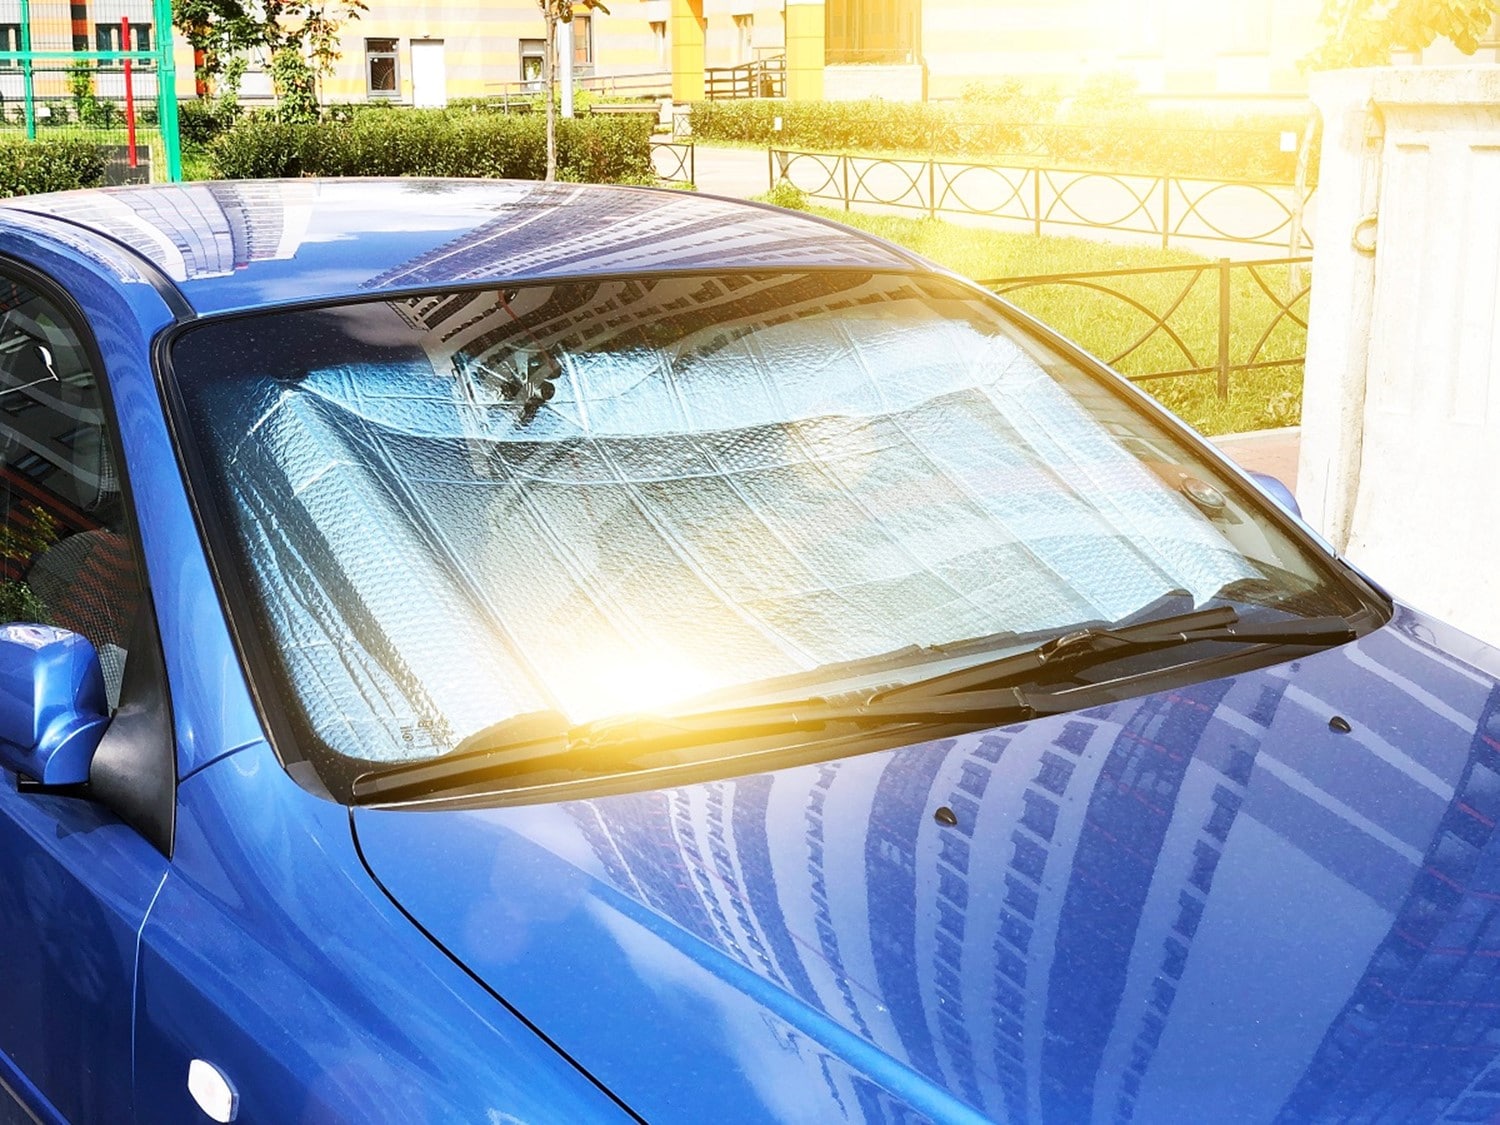 Солнцезащитная пленка на лобовое стекло автомобиля. Светоотражающая пленка для автомобиля от солнца. Защита авто от жары. Пленка от солнца снимаемая для автомобиля. Солнцезащитная пленка на лобовое